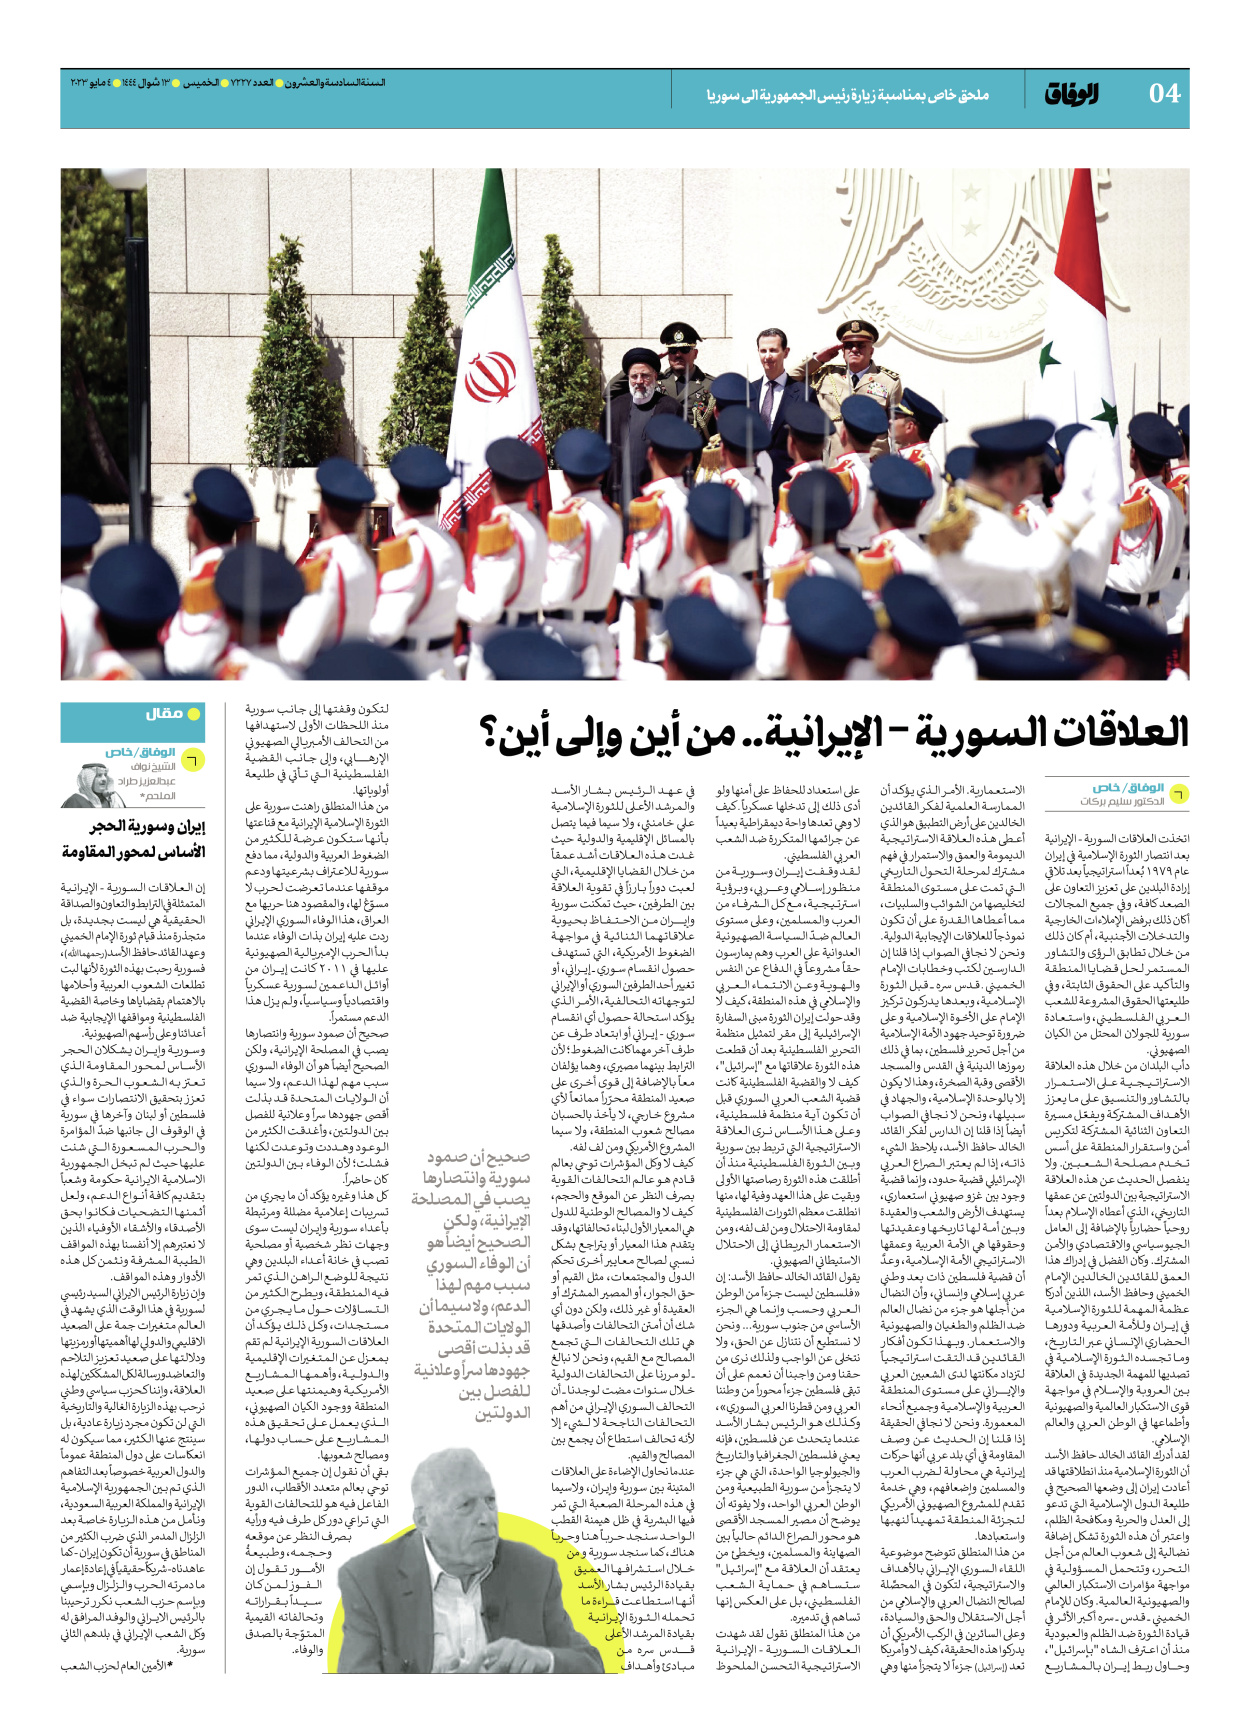 صحیفة ایران الدولیة الوفاق - ملحق بمناسبة زيارة رئيس الجمهورية الى سوريا - ٠٤ مايو ٢٠٢٣ - الصفحة ٤